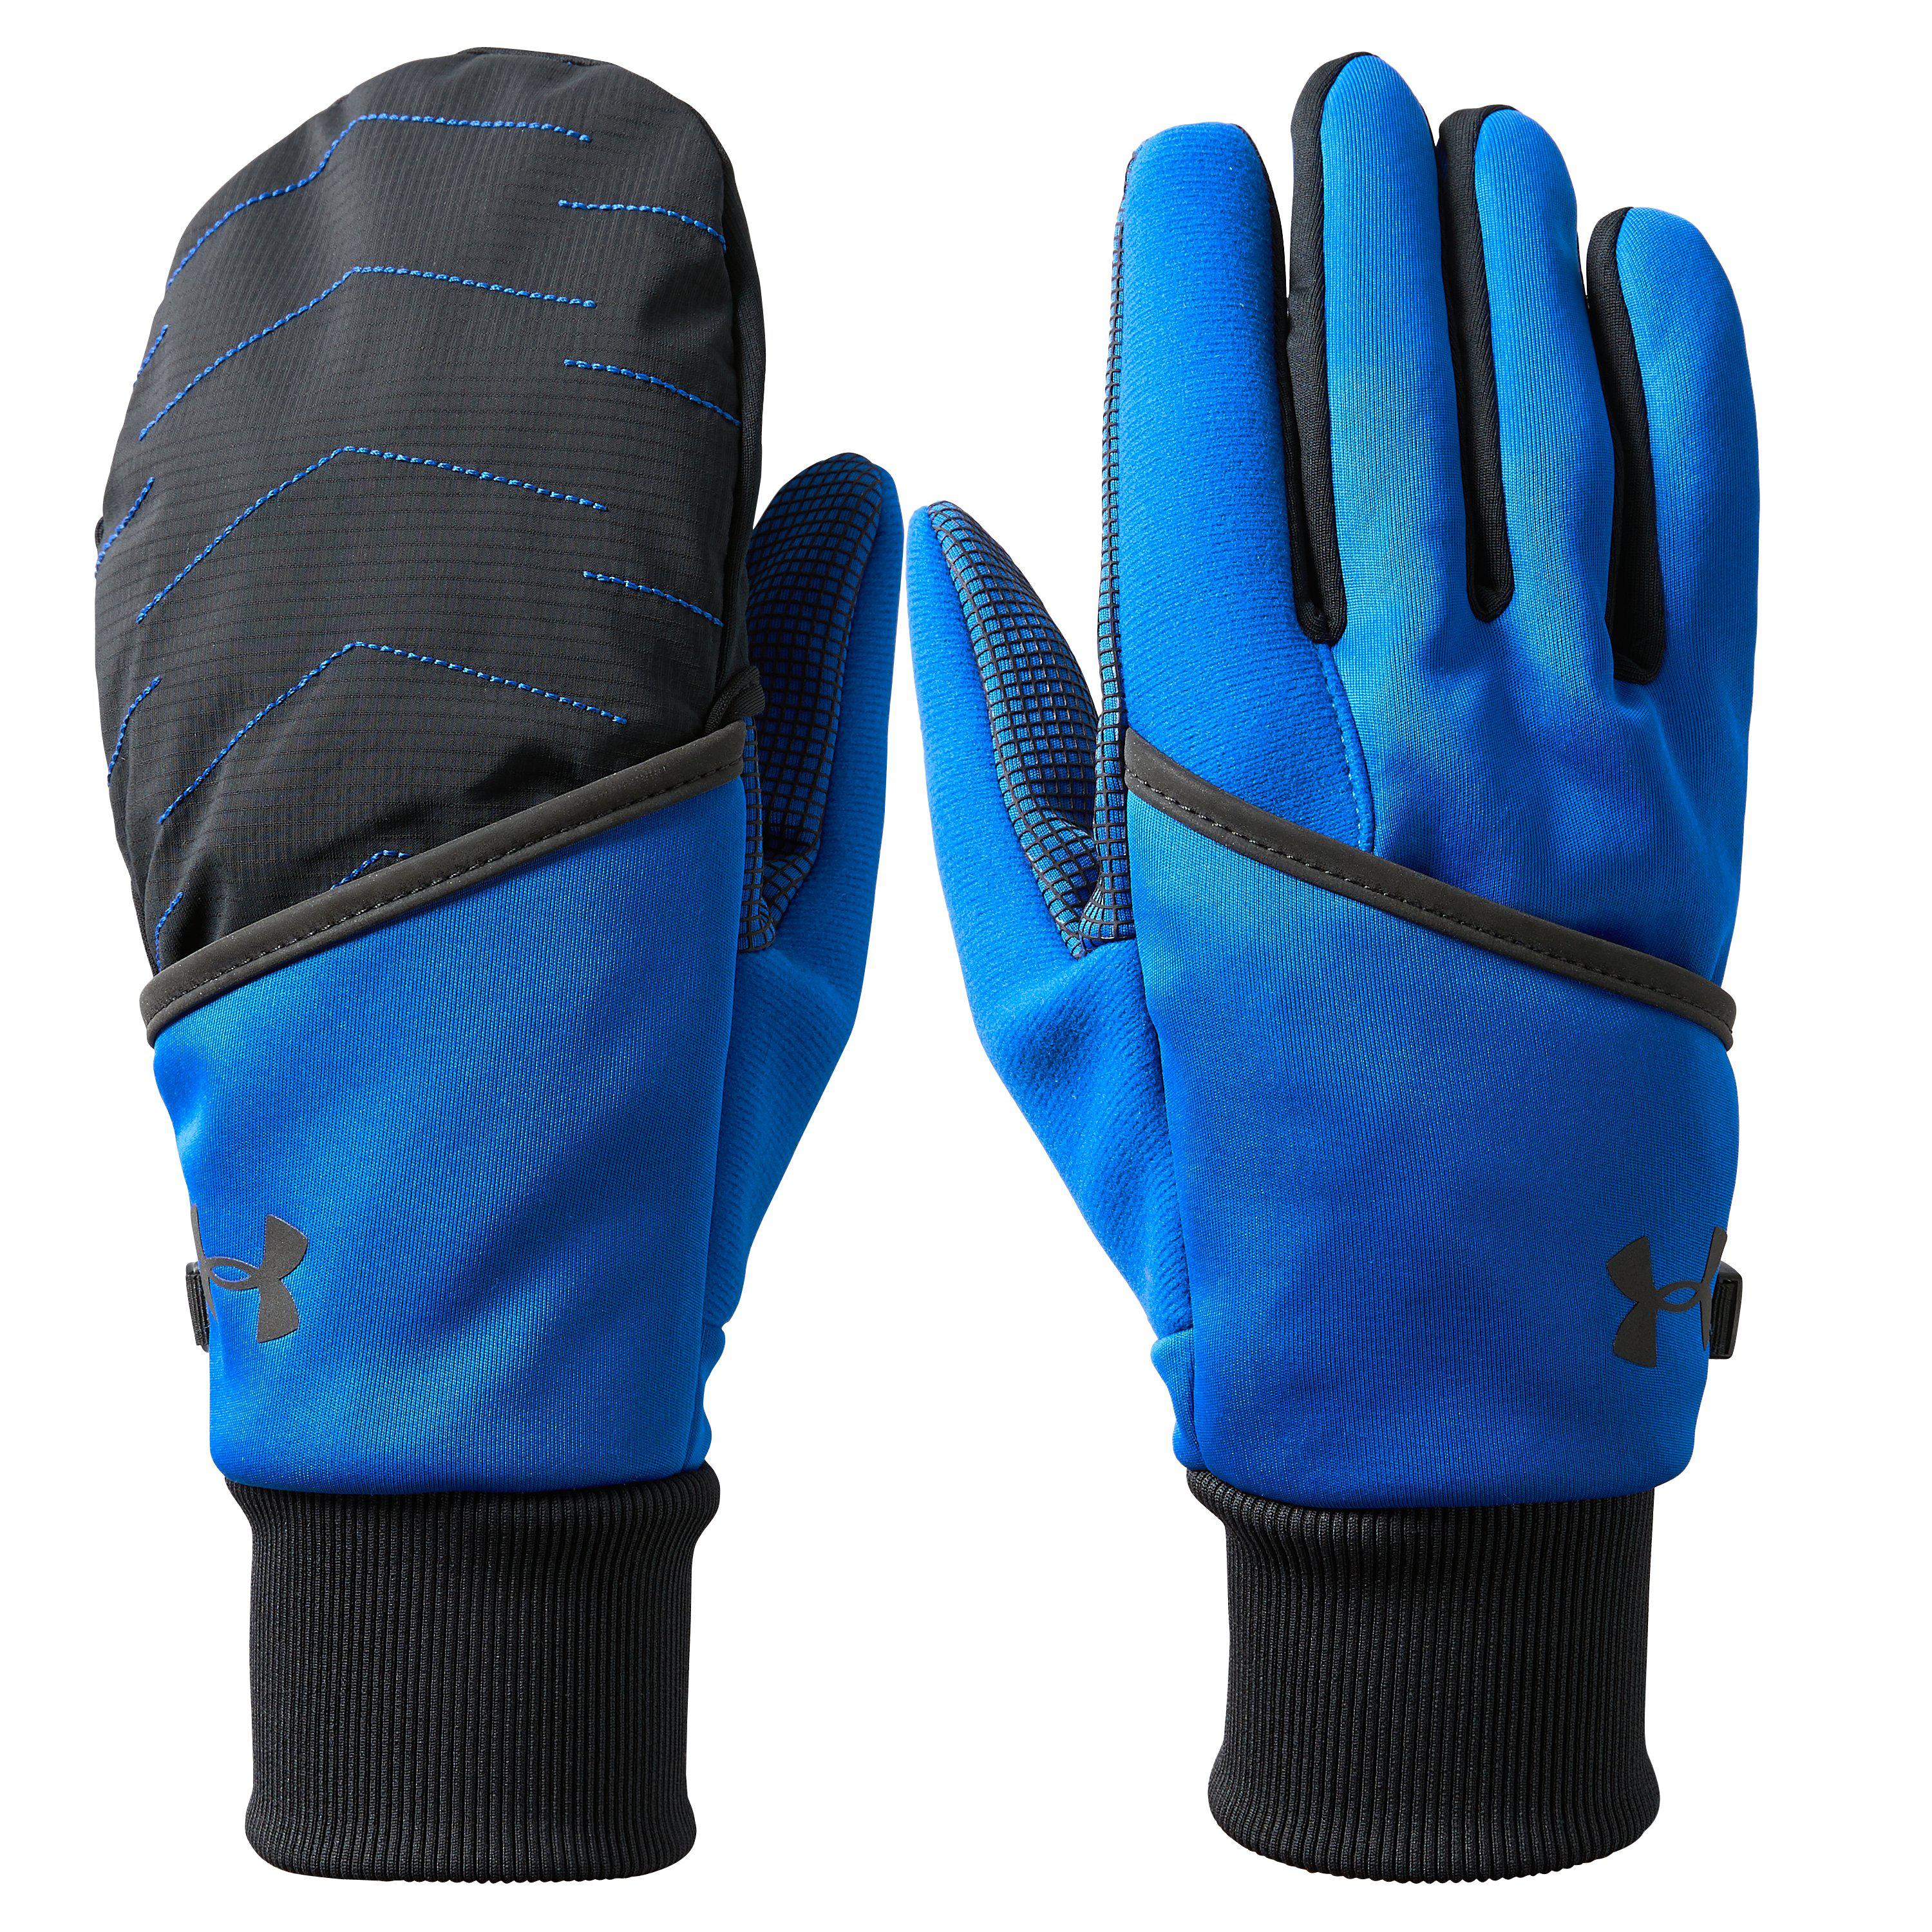 Under Armour Coldgear Reactor Gloves Flash Sales, 53% OFF | panni.com